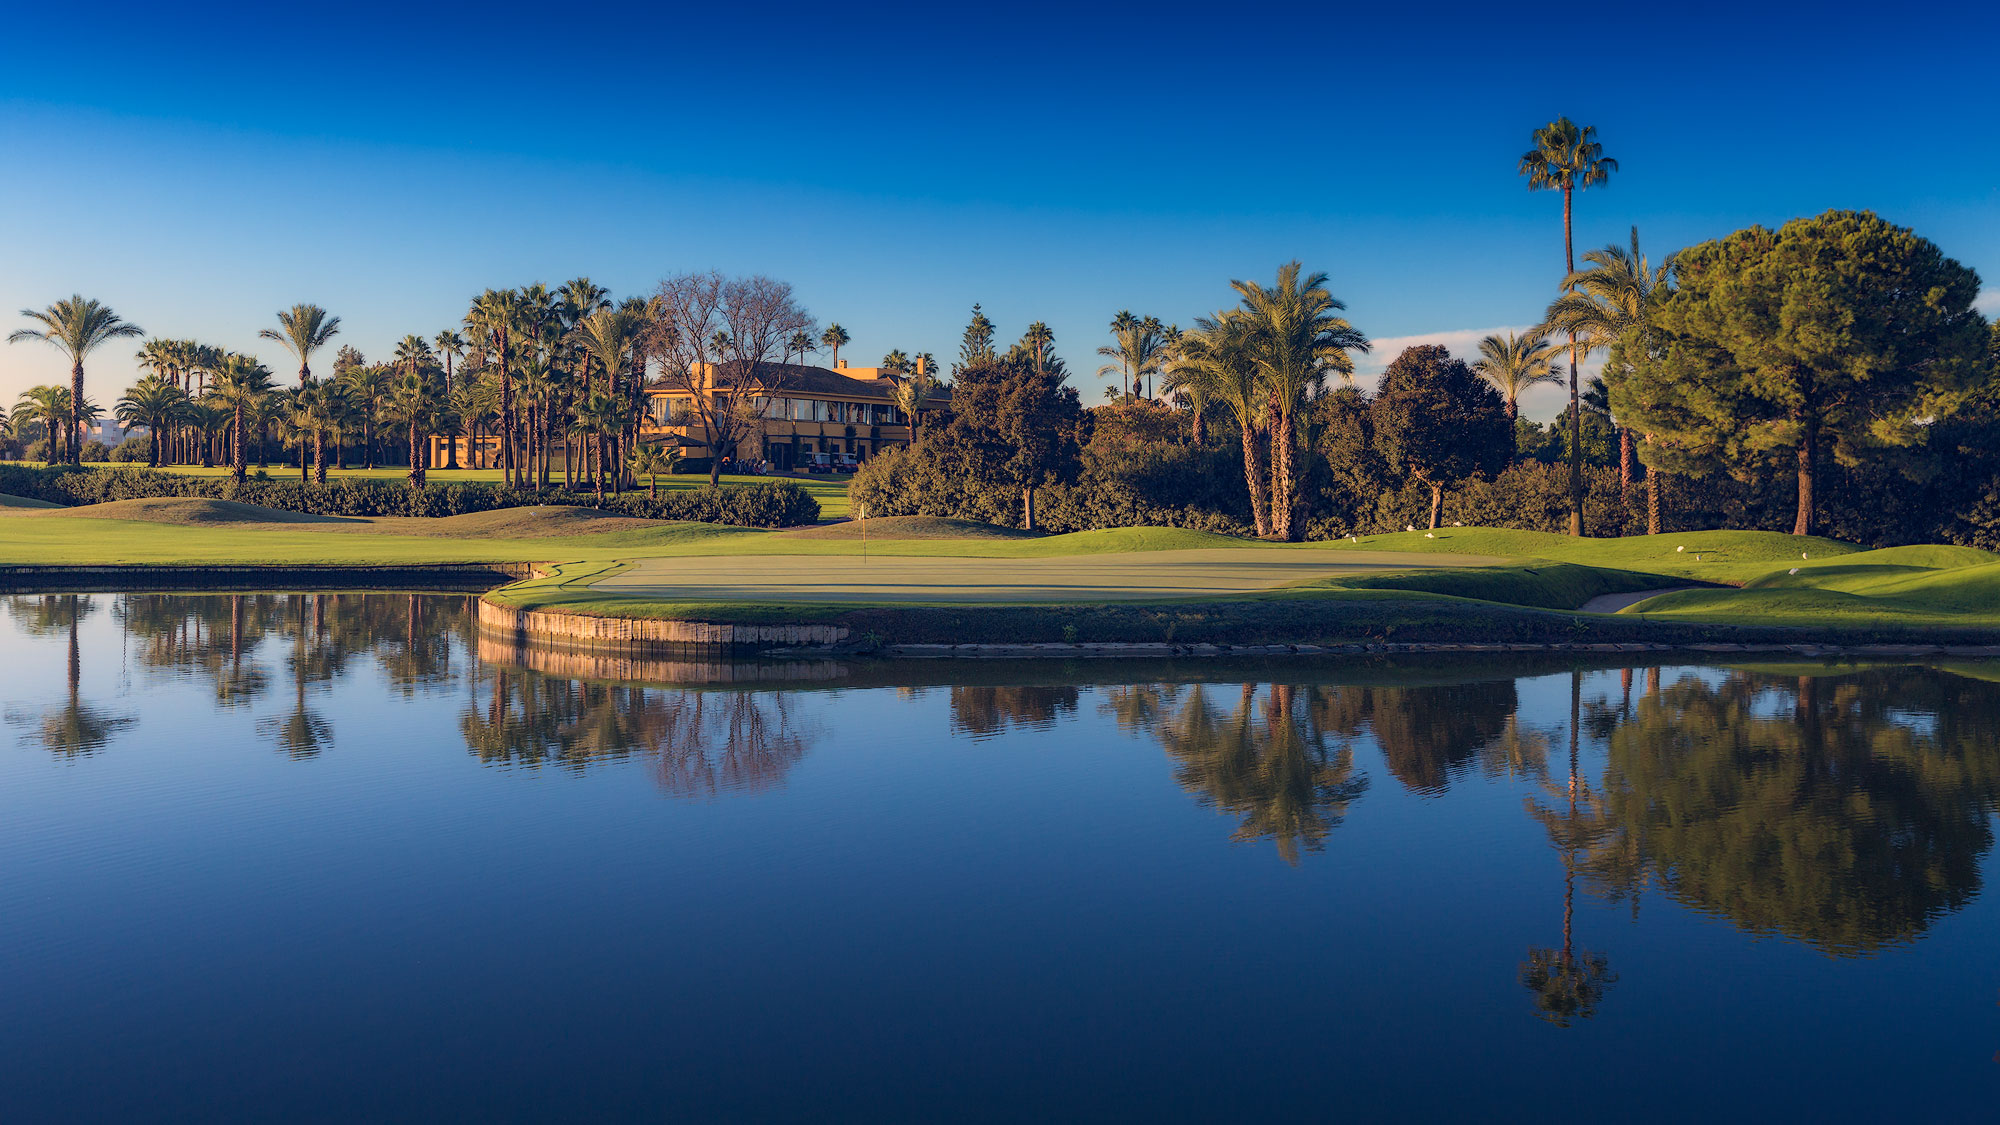 El equipo de agronomía del DP World Tour confirma el alto nivel de mantenimiento del recorrido del Real Club Sevilla Golf de cara al Challenge de España